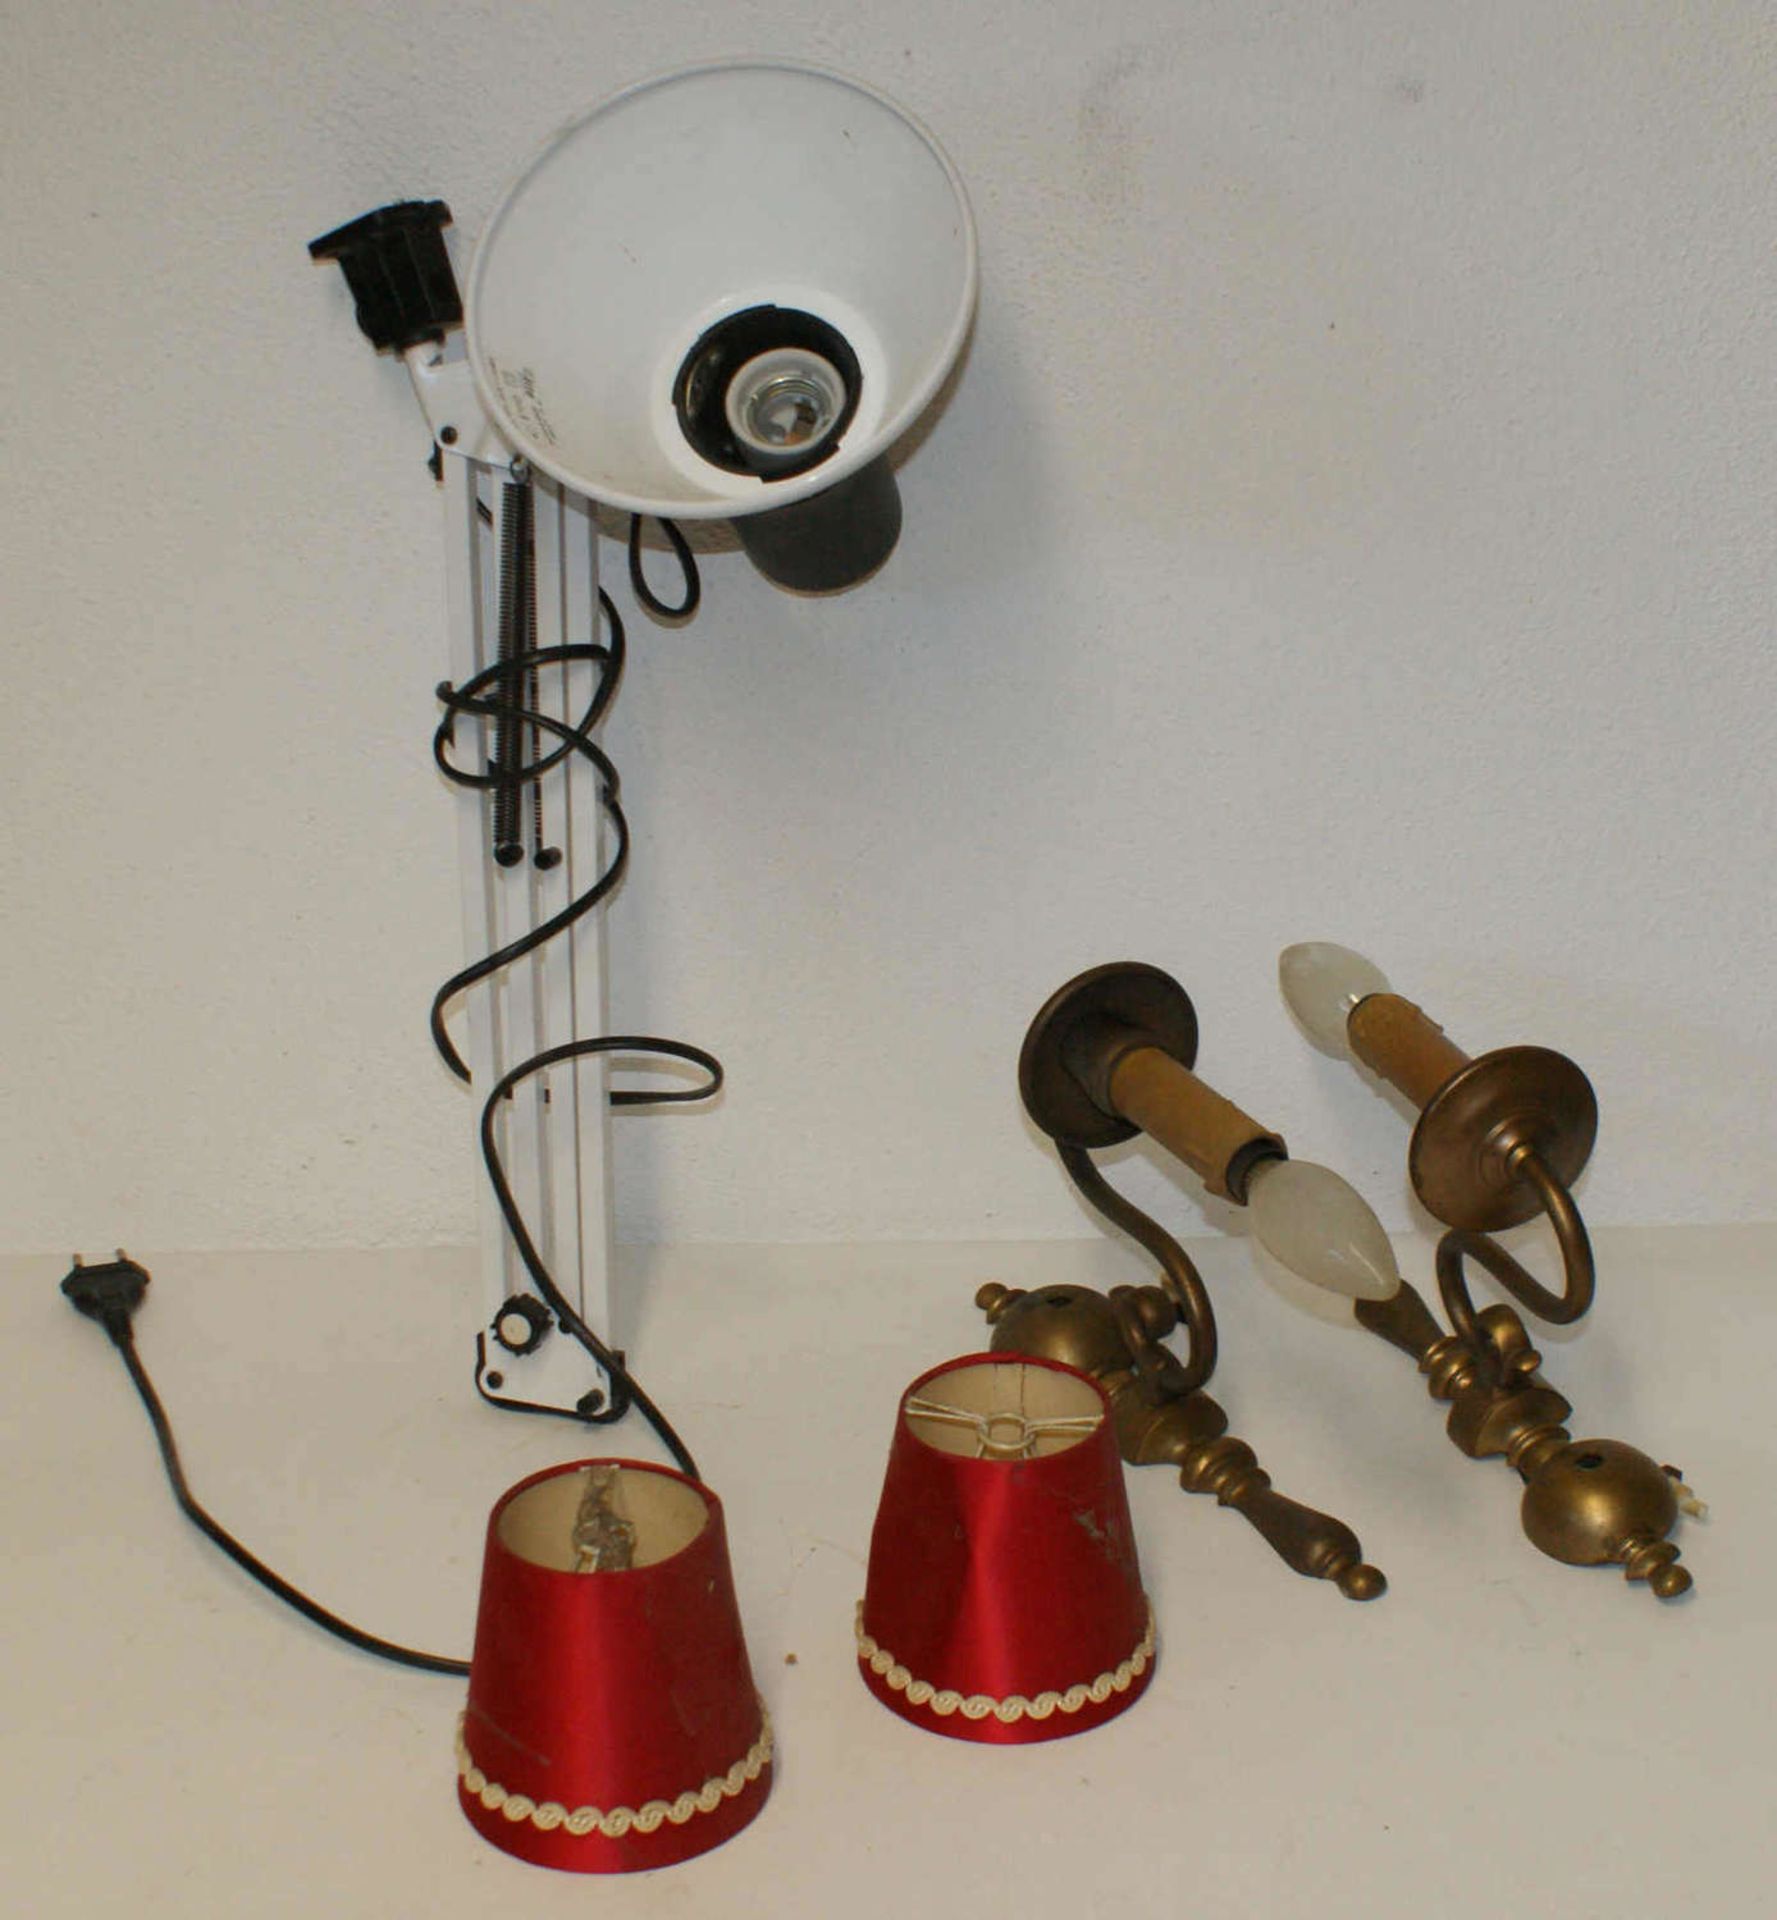 Kleines Lampenkonvolut, bestehend aus 1 Paar Wandlampen aus Messing mit rotem Lampenschirm, sowie